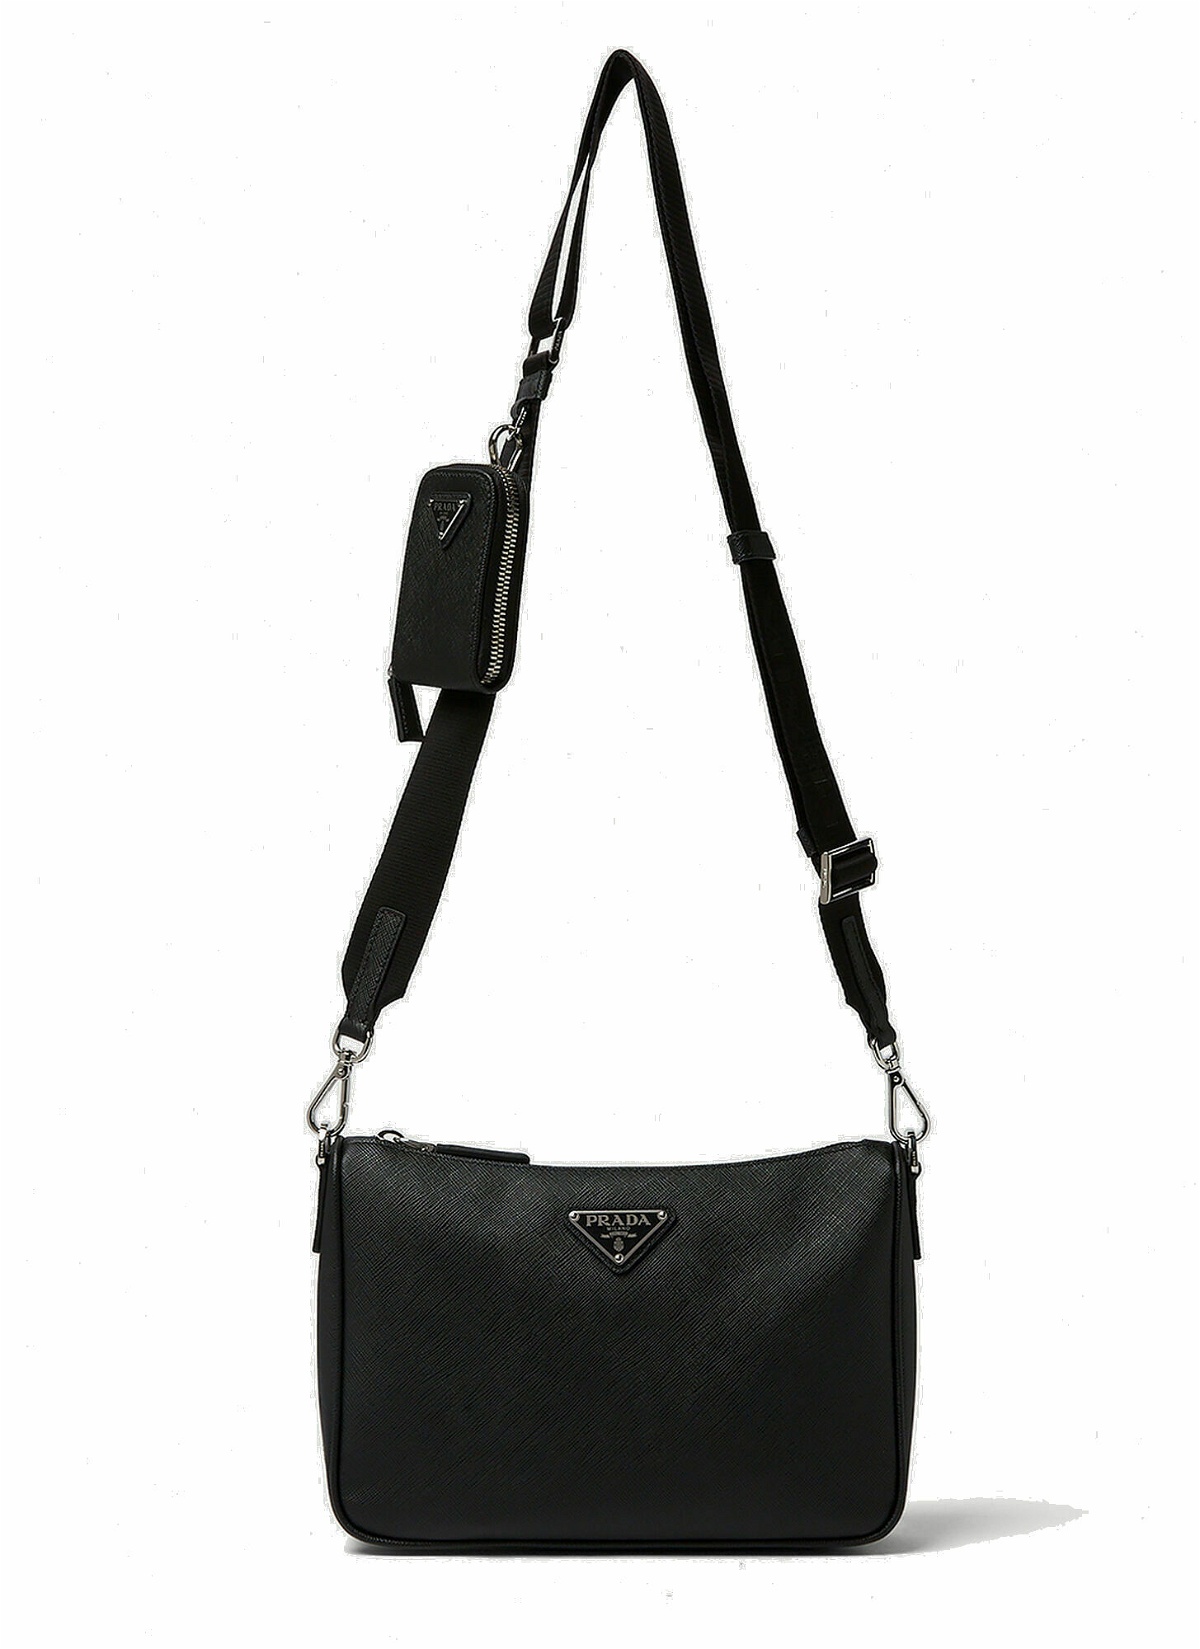 Photo: Saffiano Crossbody Bag in Black